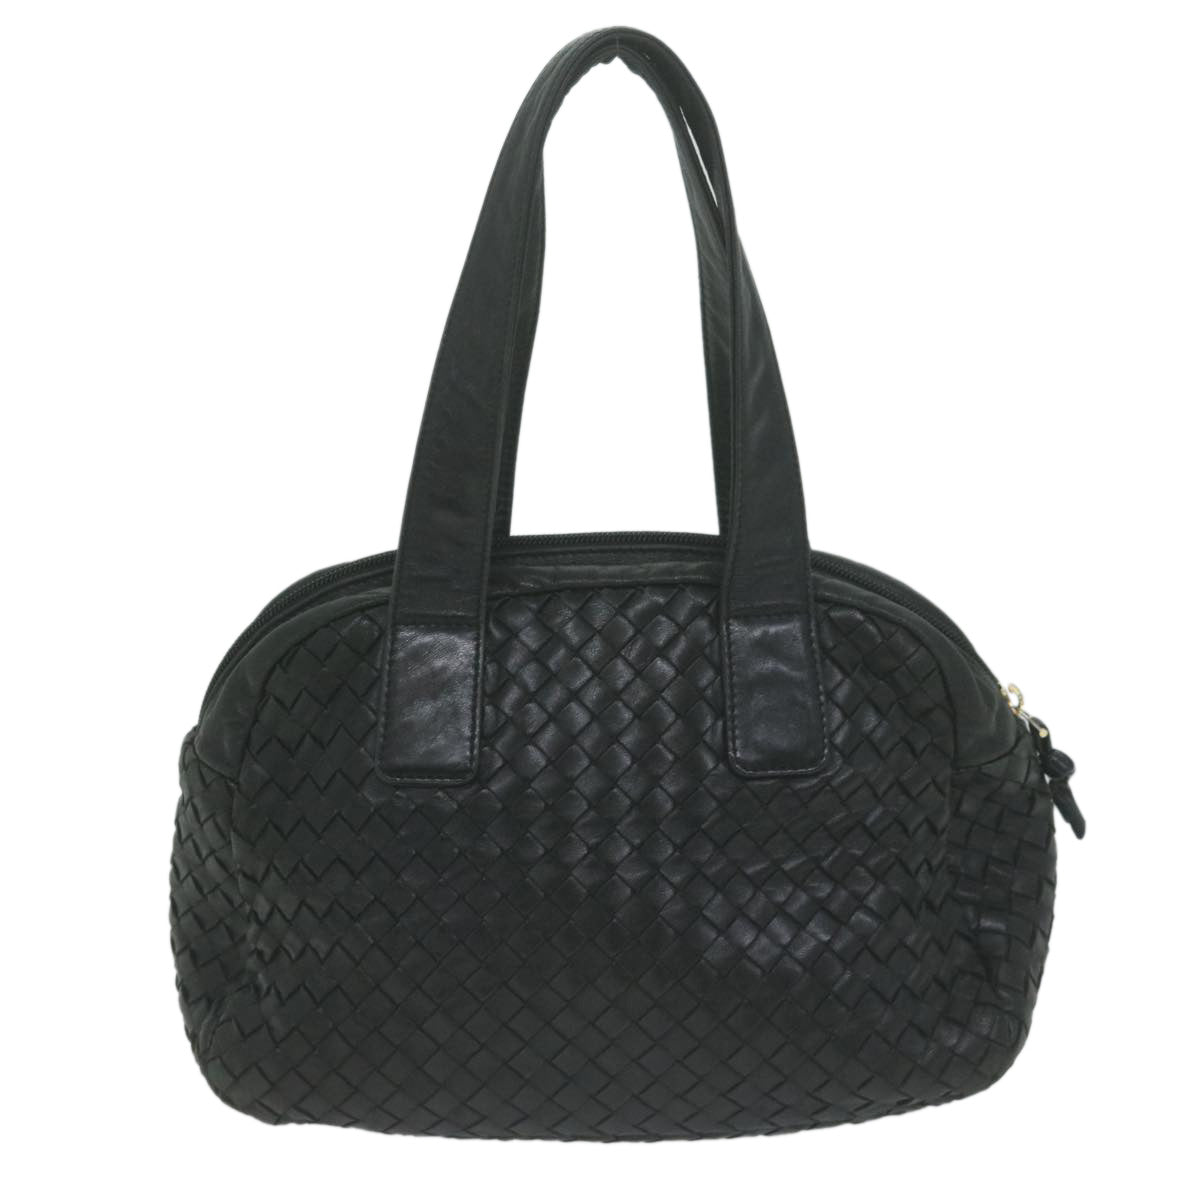 BOTTEGAVENETA INTRECCIATO Hand Bag Leather Black Auth am5660 - 0